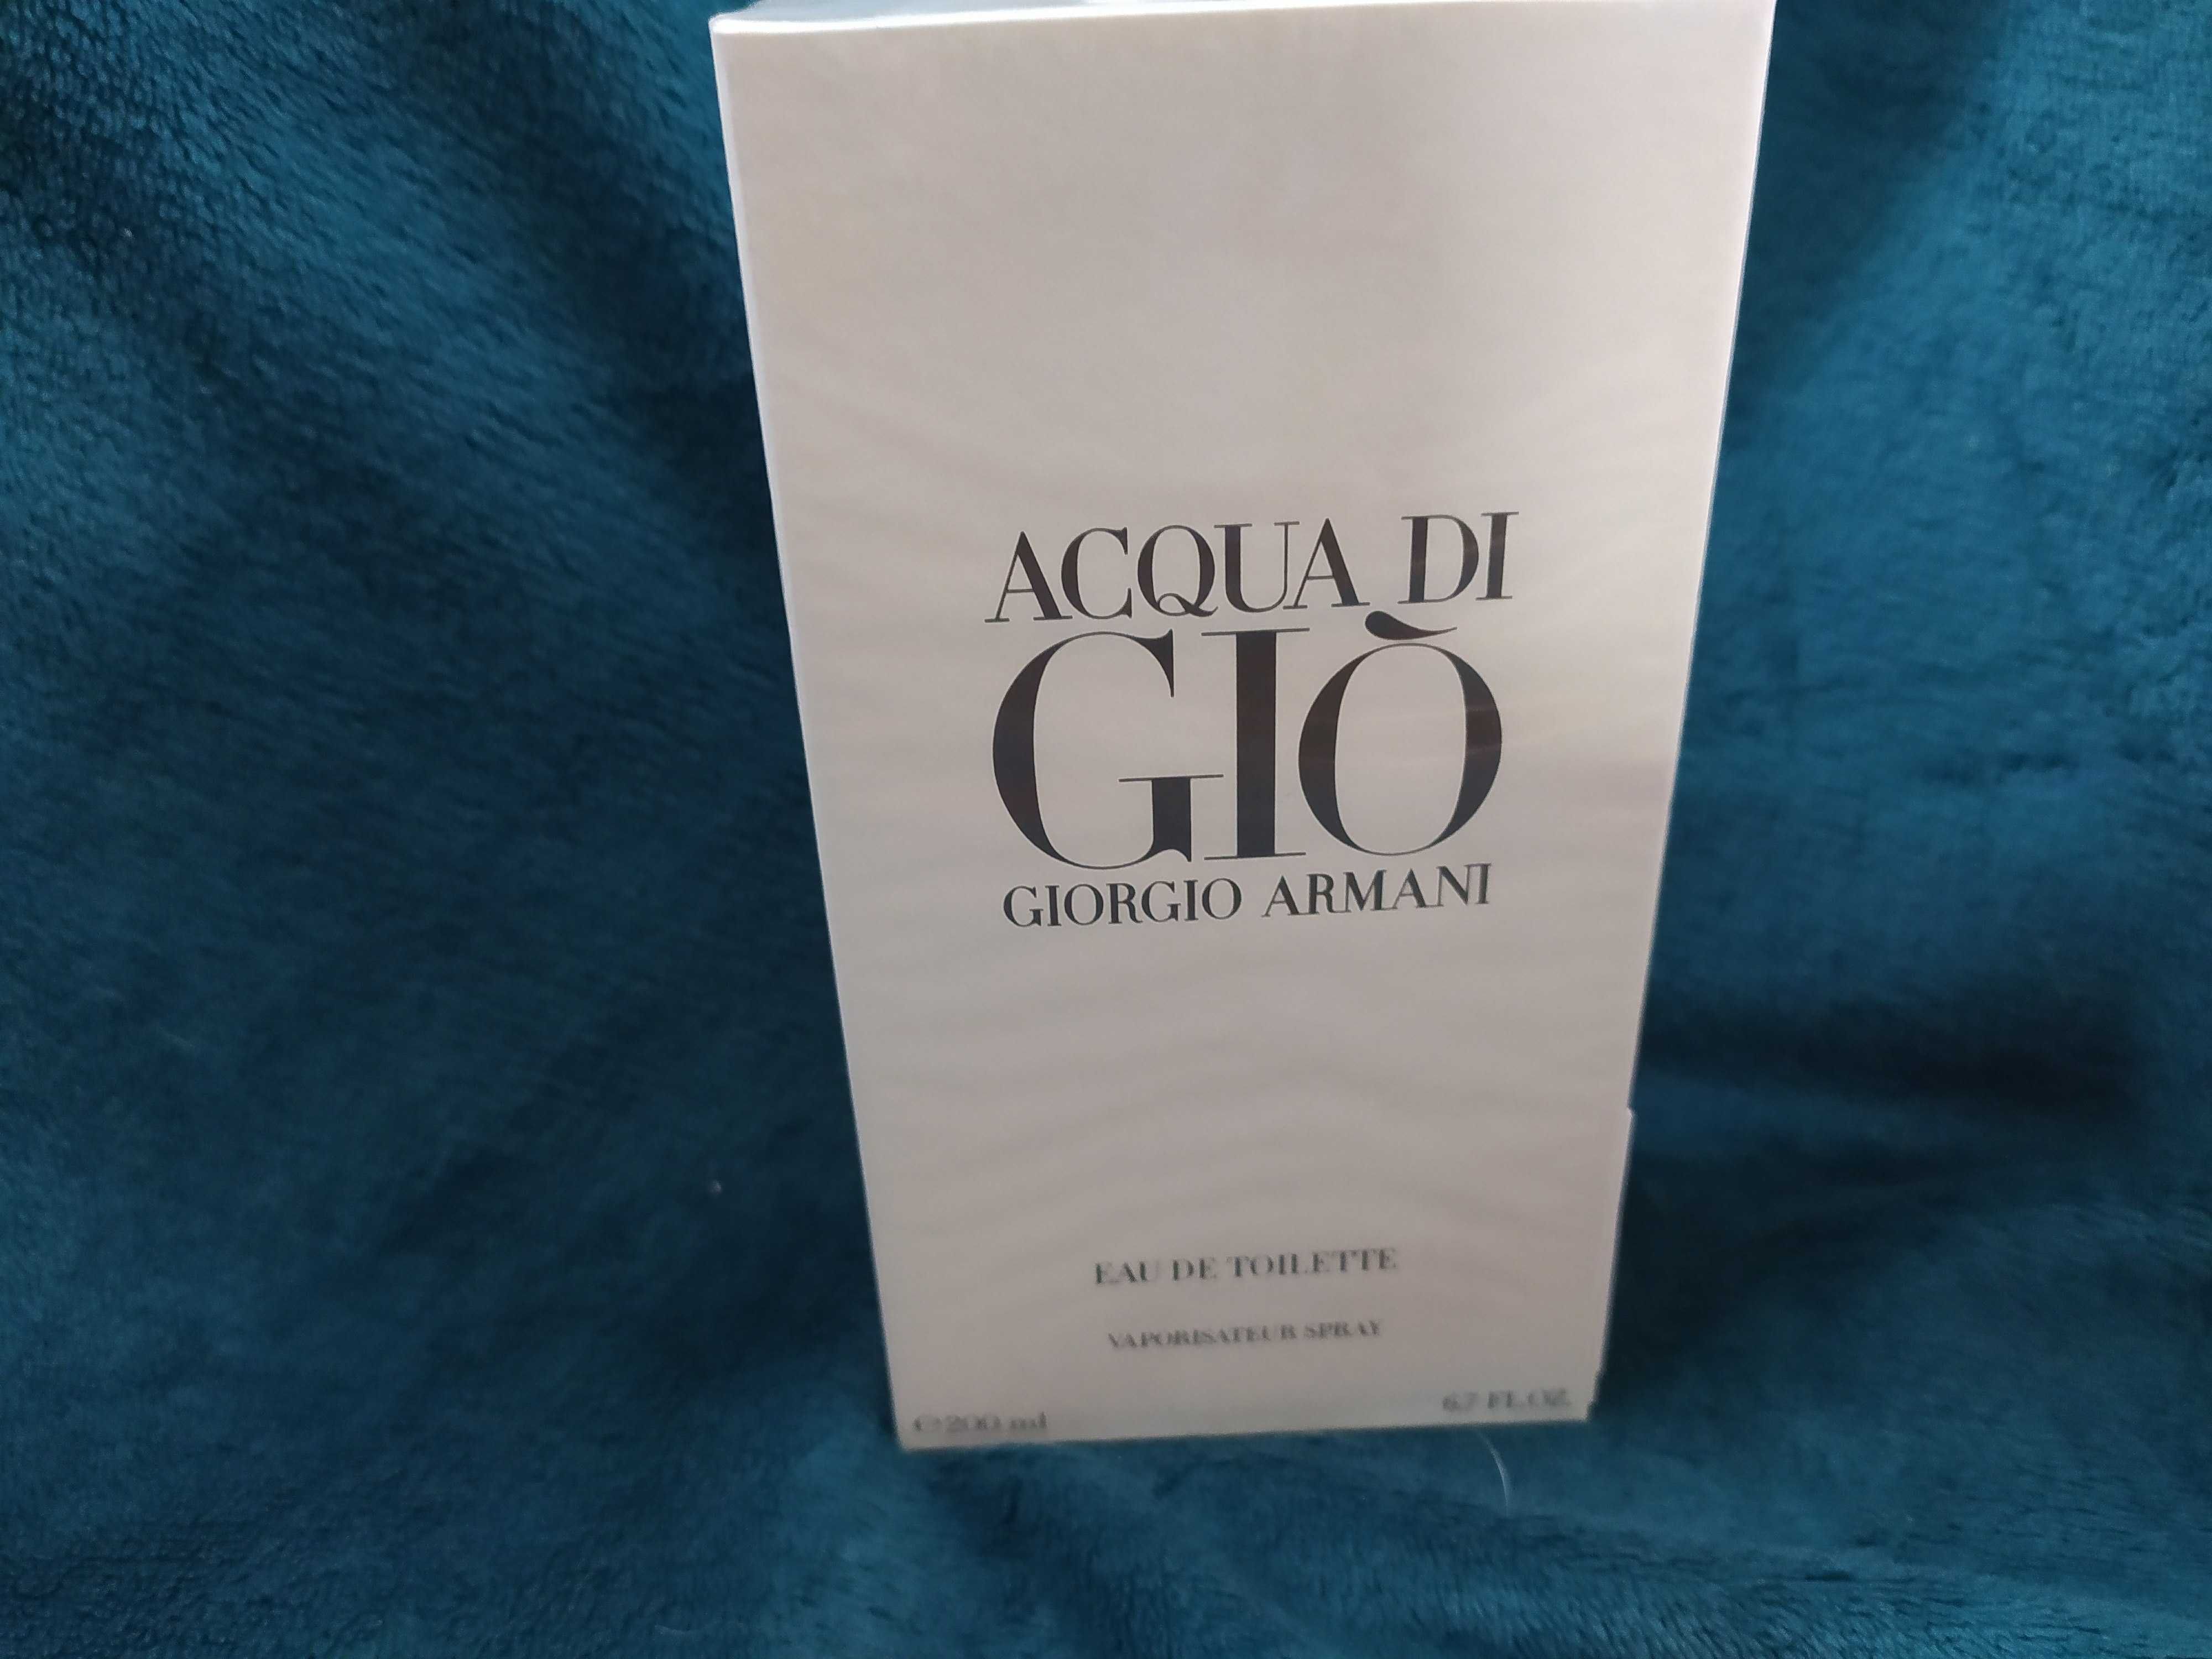 Giorgio Armani Acqua di Gio 200 ml. Wys. Gratis.